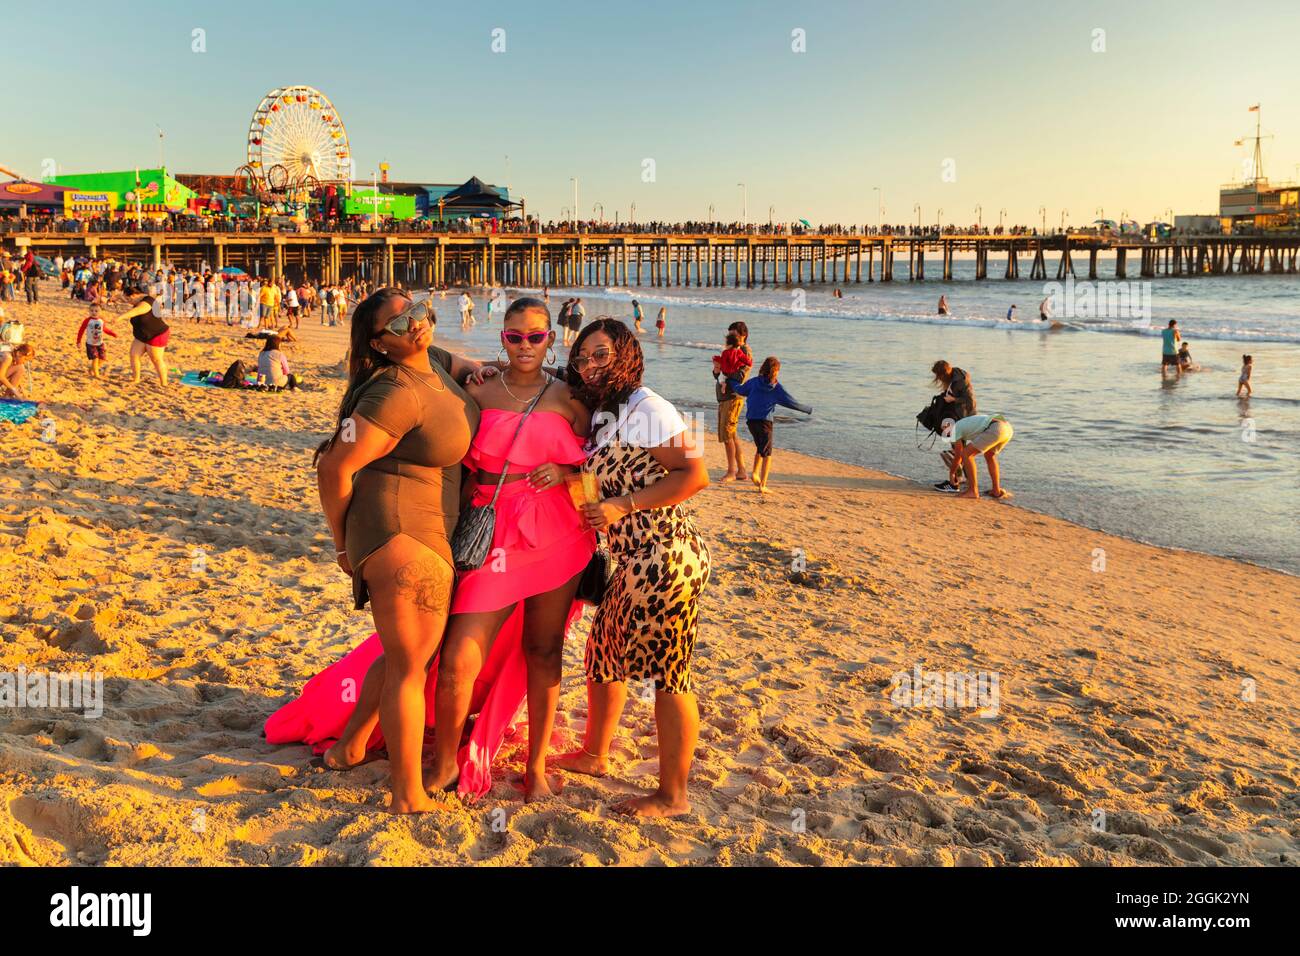 Trois jeunes femmes posent sur la plage de Santa Monica, à Santa Monica, en Californie, aux États-Unis Banque D'Images